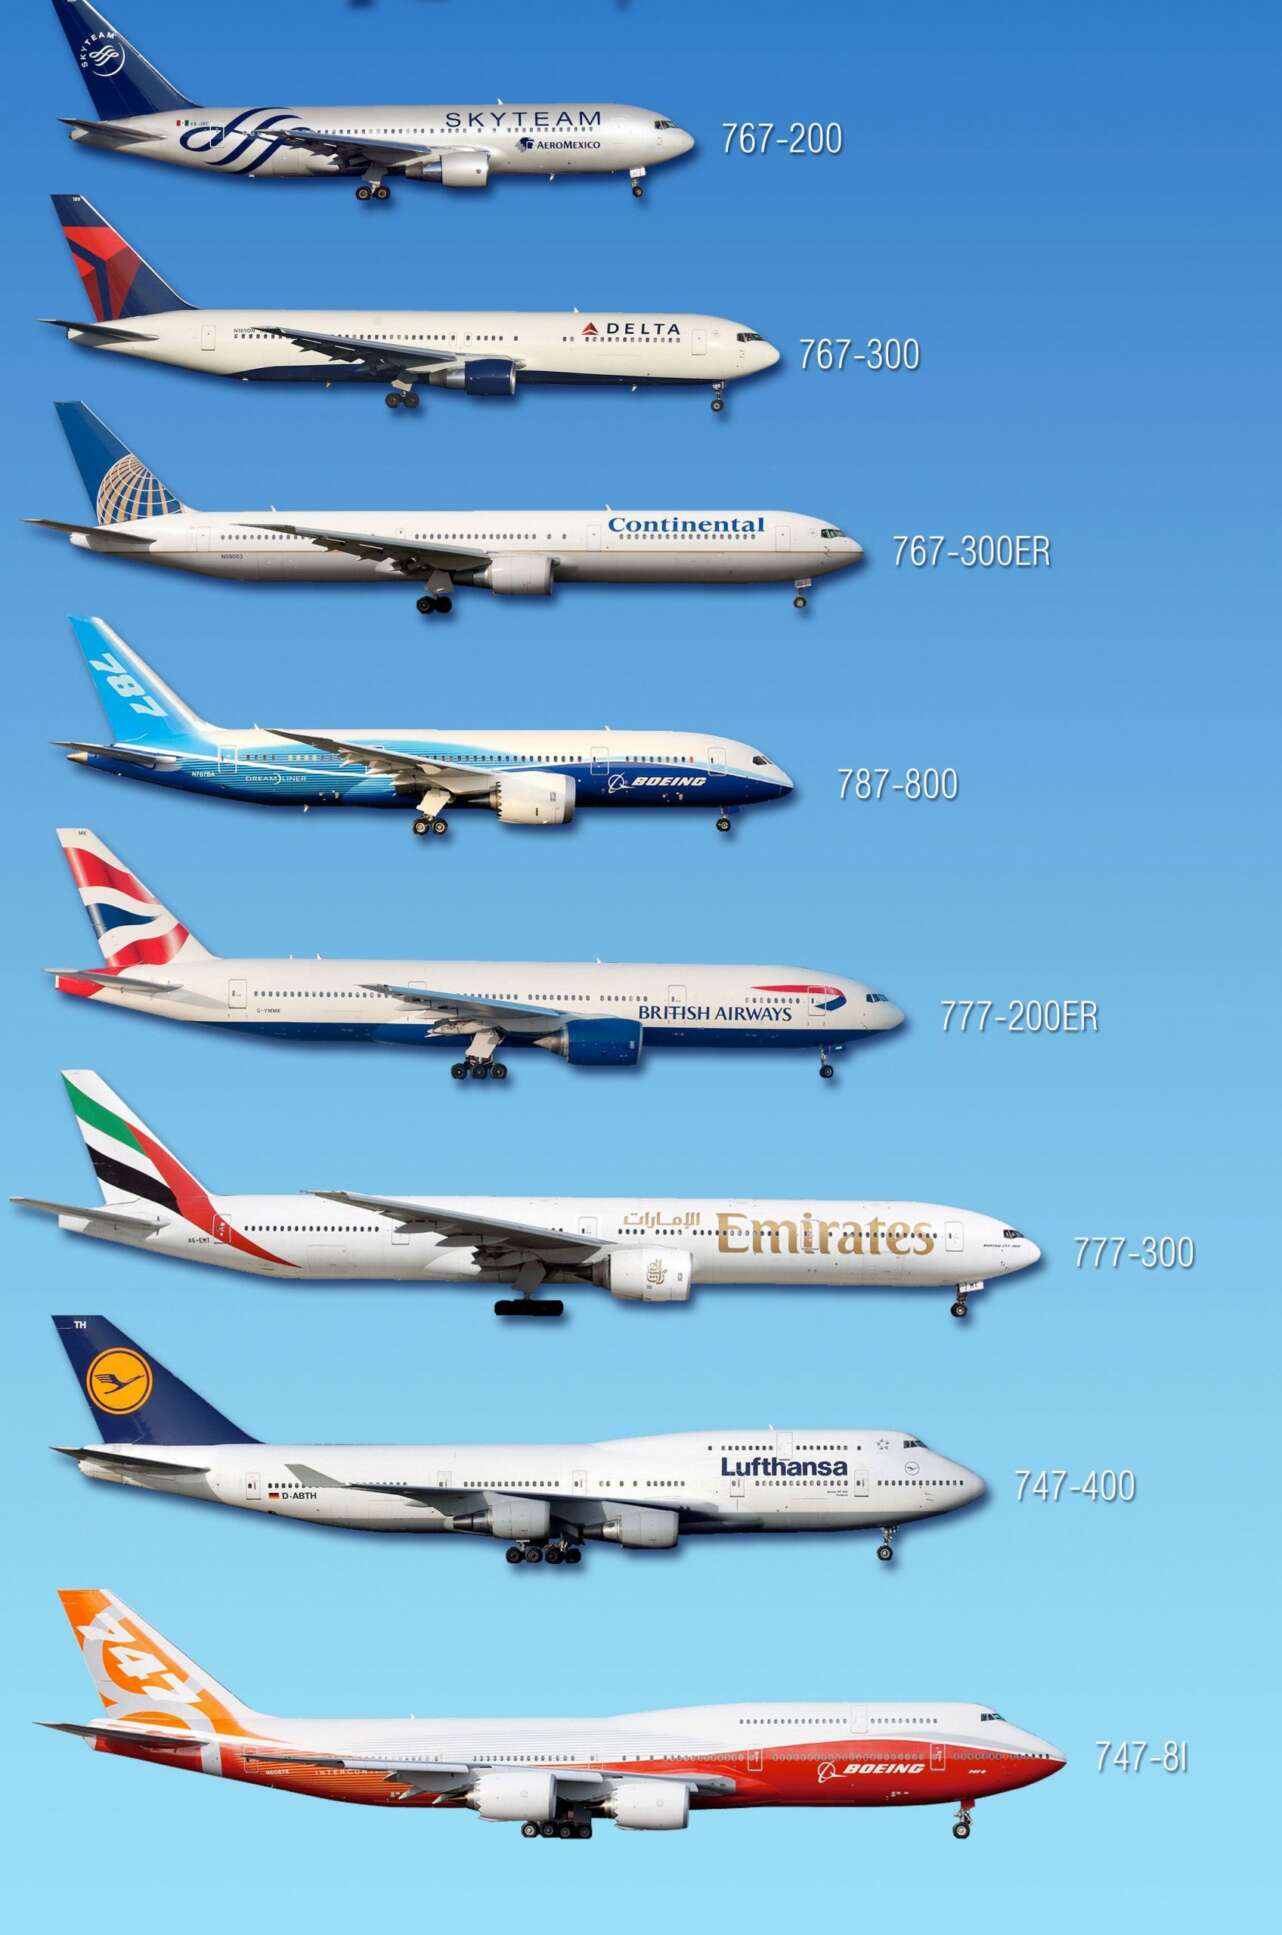 Diferencia de tamaÃ±o entre modelos de doble pasillo de Boeing. Foto: Paolo Rosa.